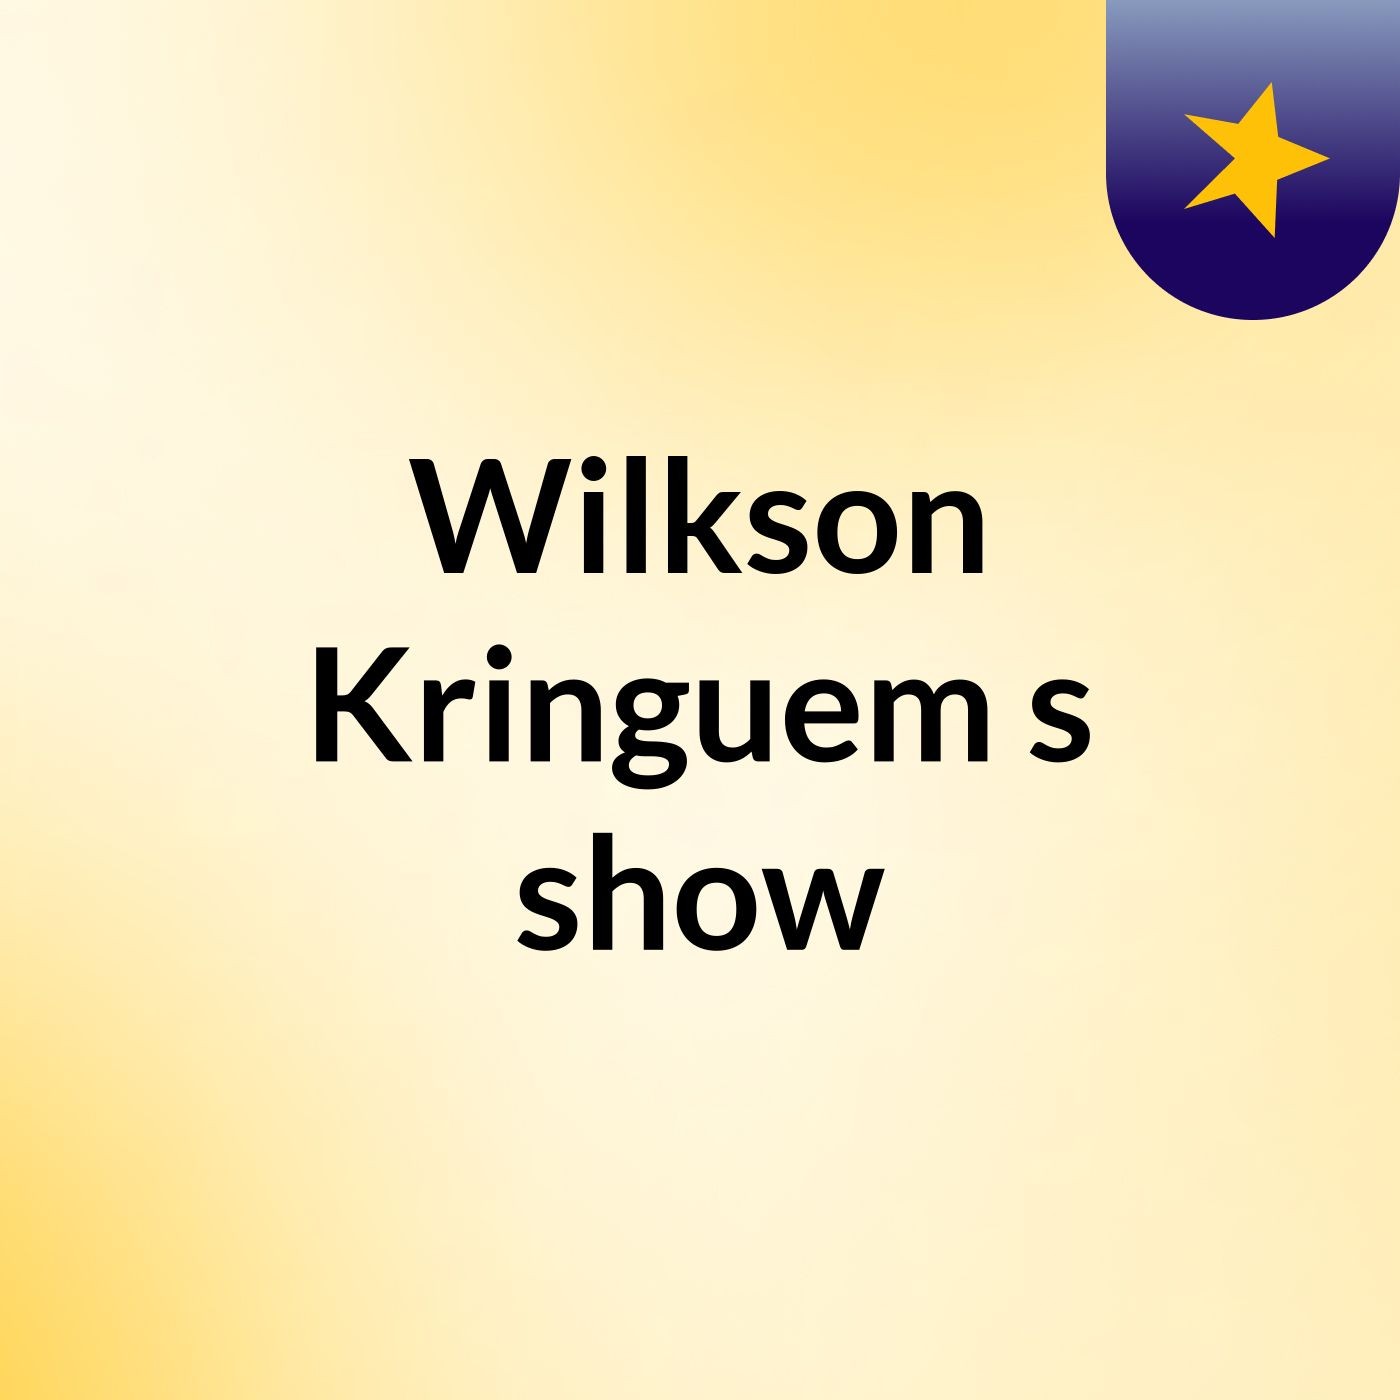 Wilkson Kringuem's show